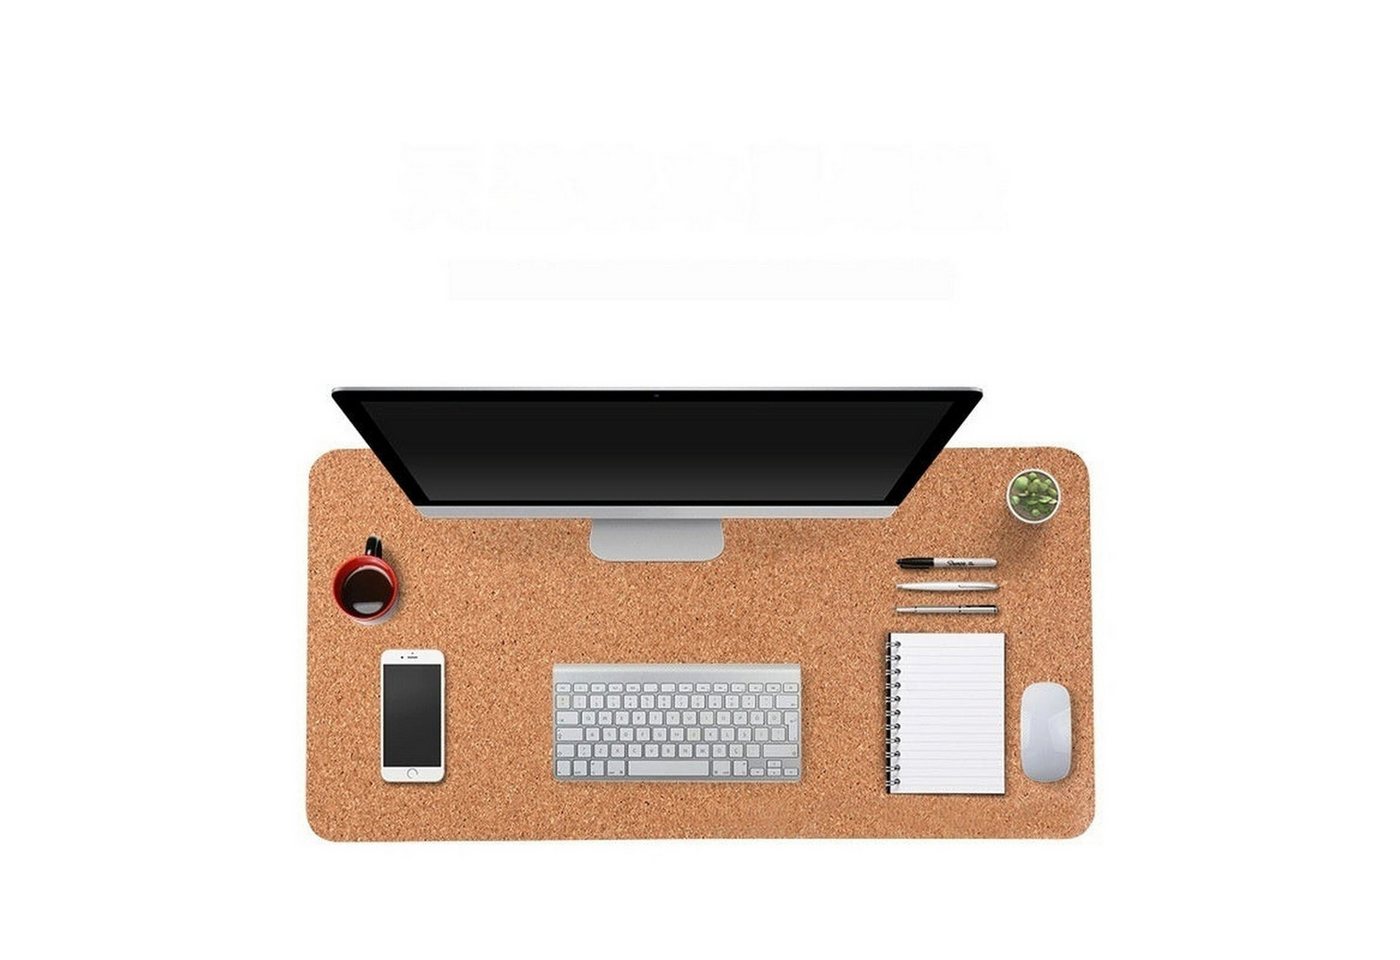 AUKUU Mauspad Mauspad doppelseitig verdickt Schreibtischunterlage, Laptop Tastatur Pad Schreibtischunterlage von AUKUU